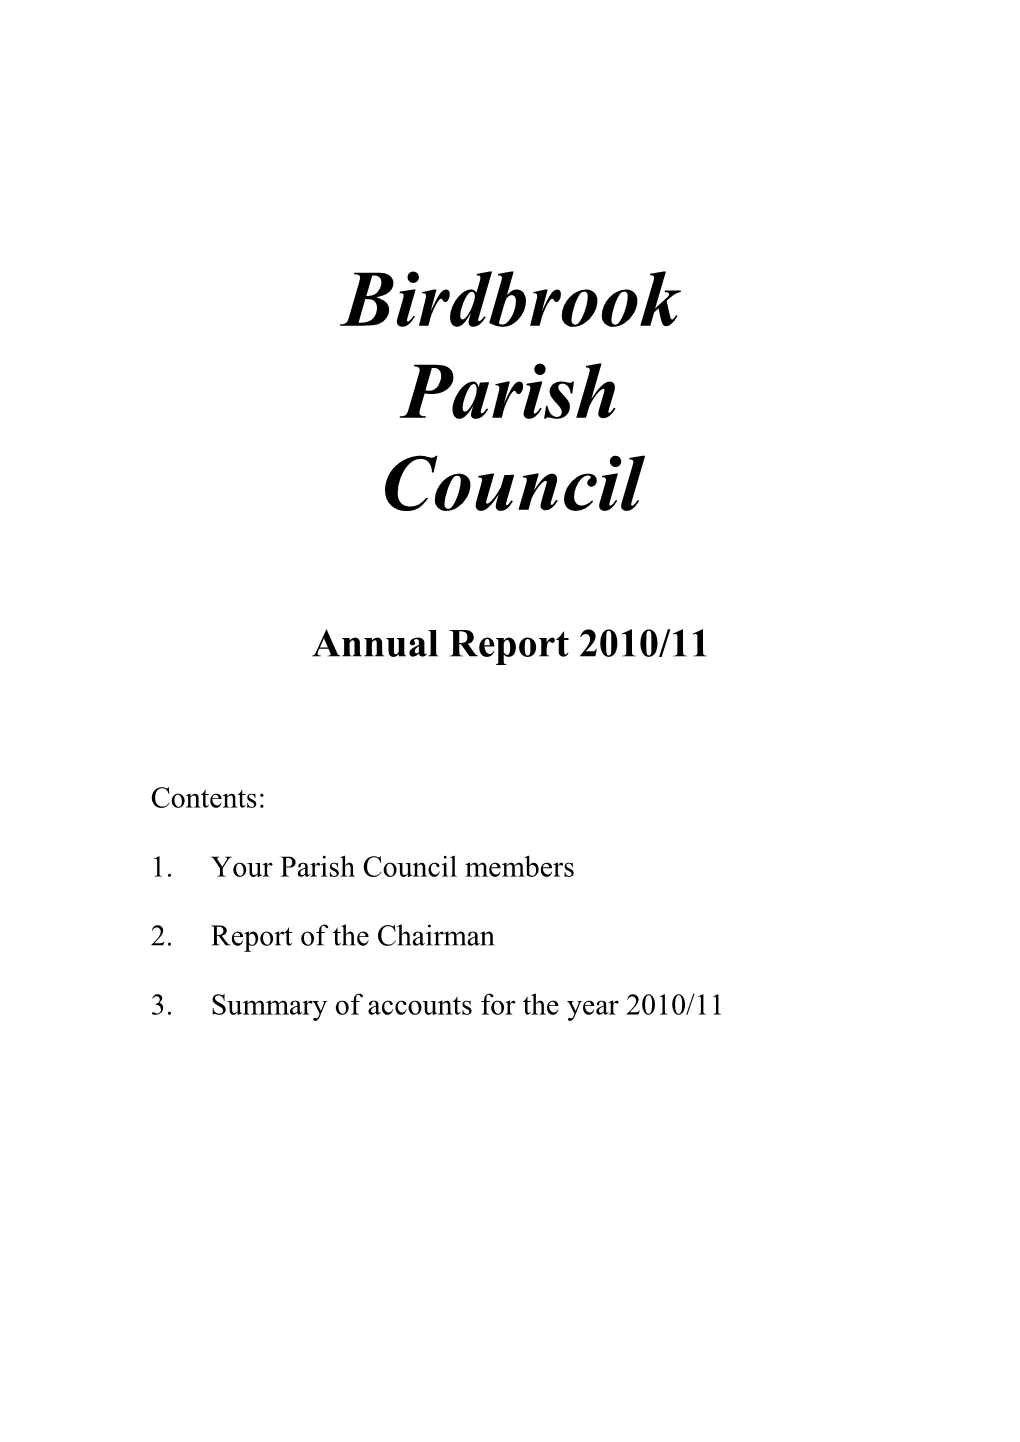 Birdbrook Parish Council